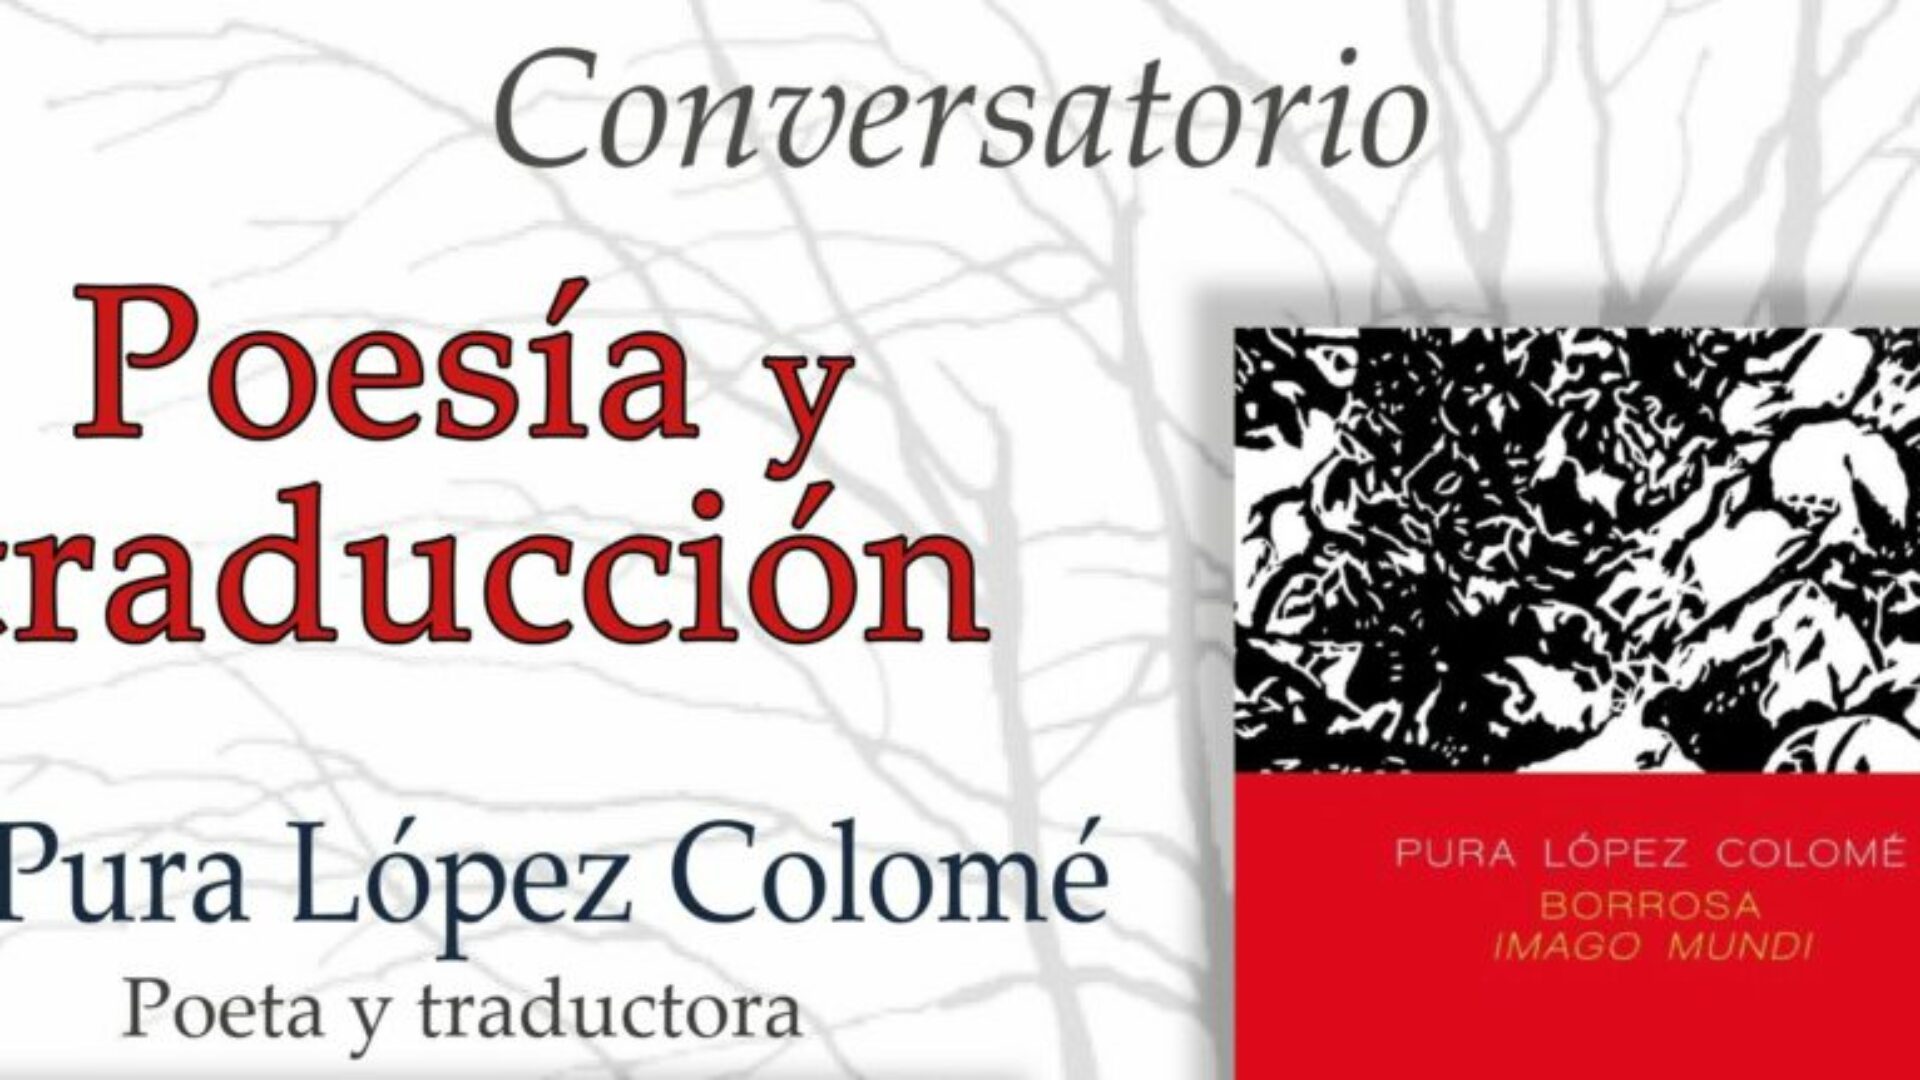 Poesía y traducción. Pura López Colomé copy